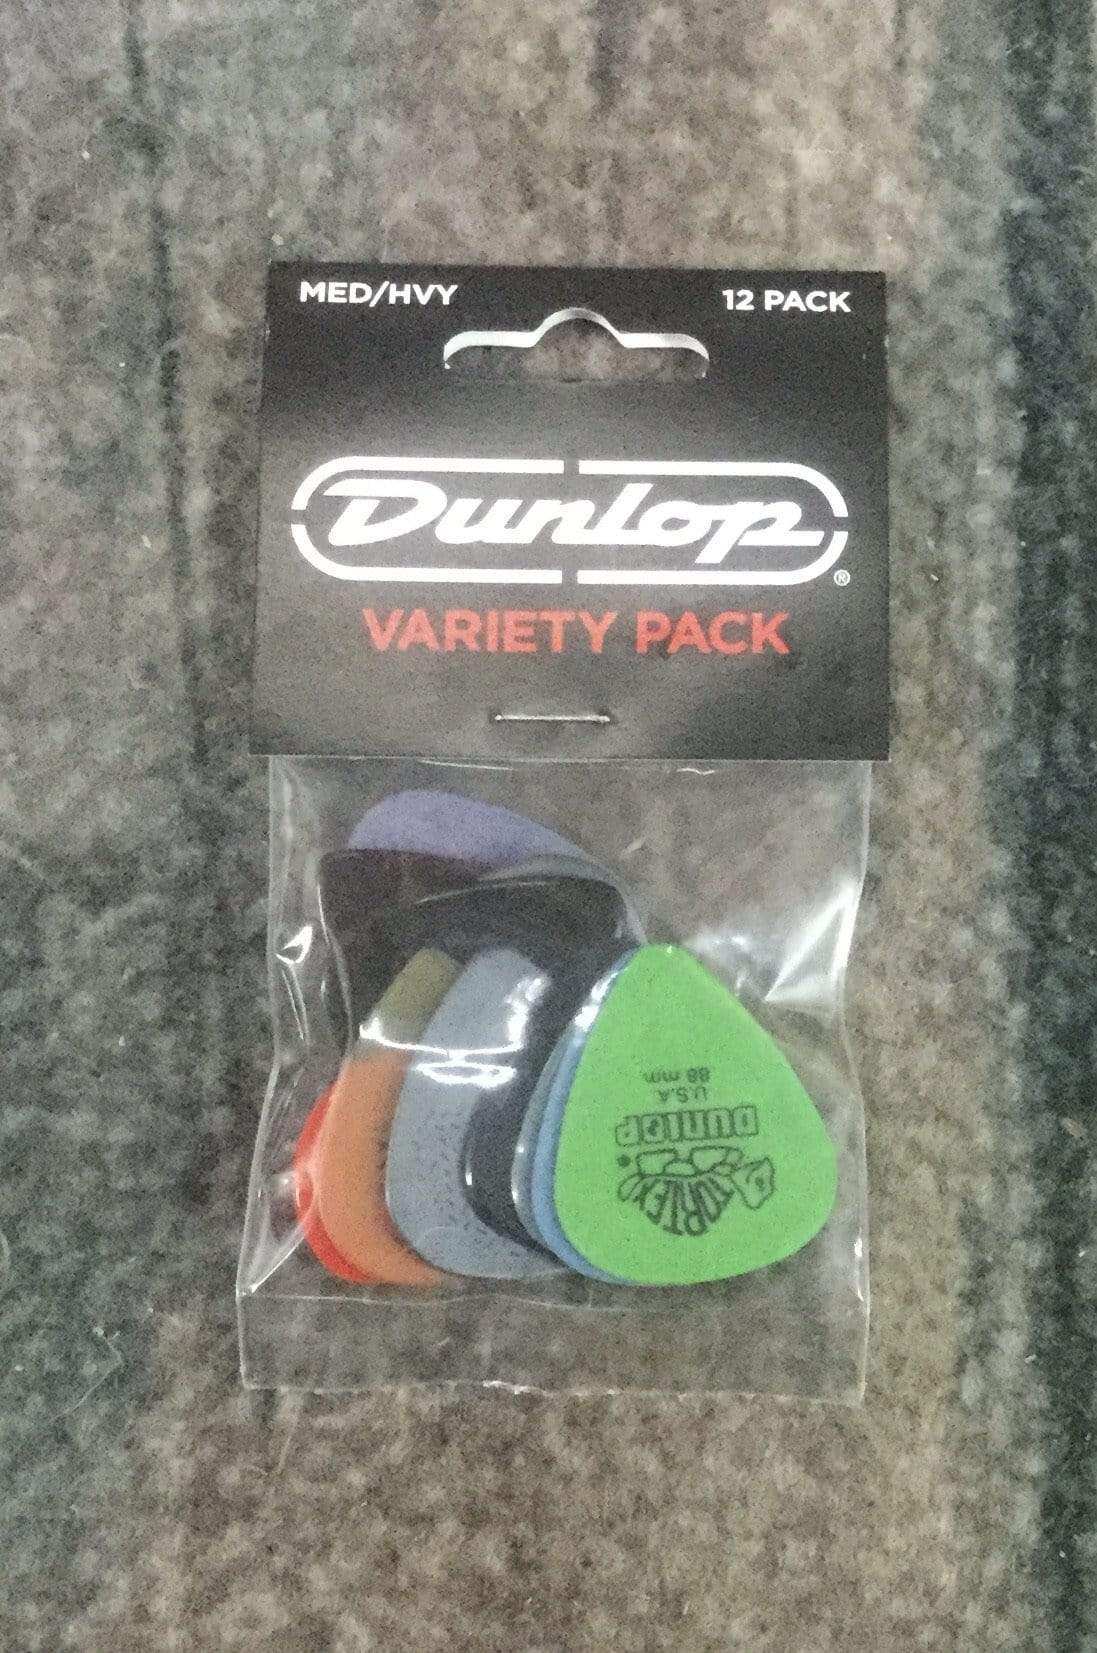 Dunlop Pick Dunlop Variety Pack MED/HVY PVP102 Pick Pack